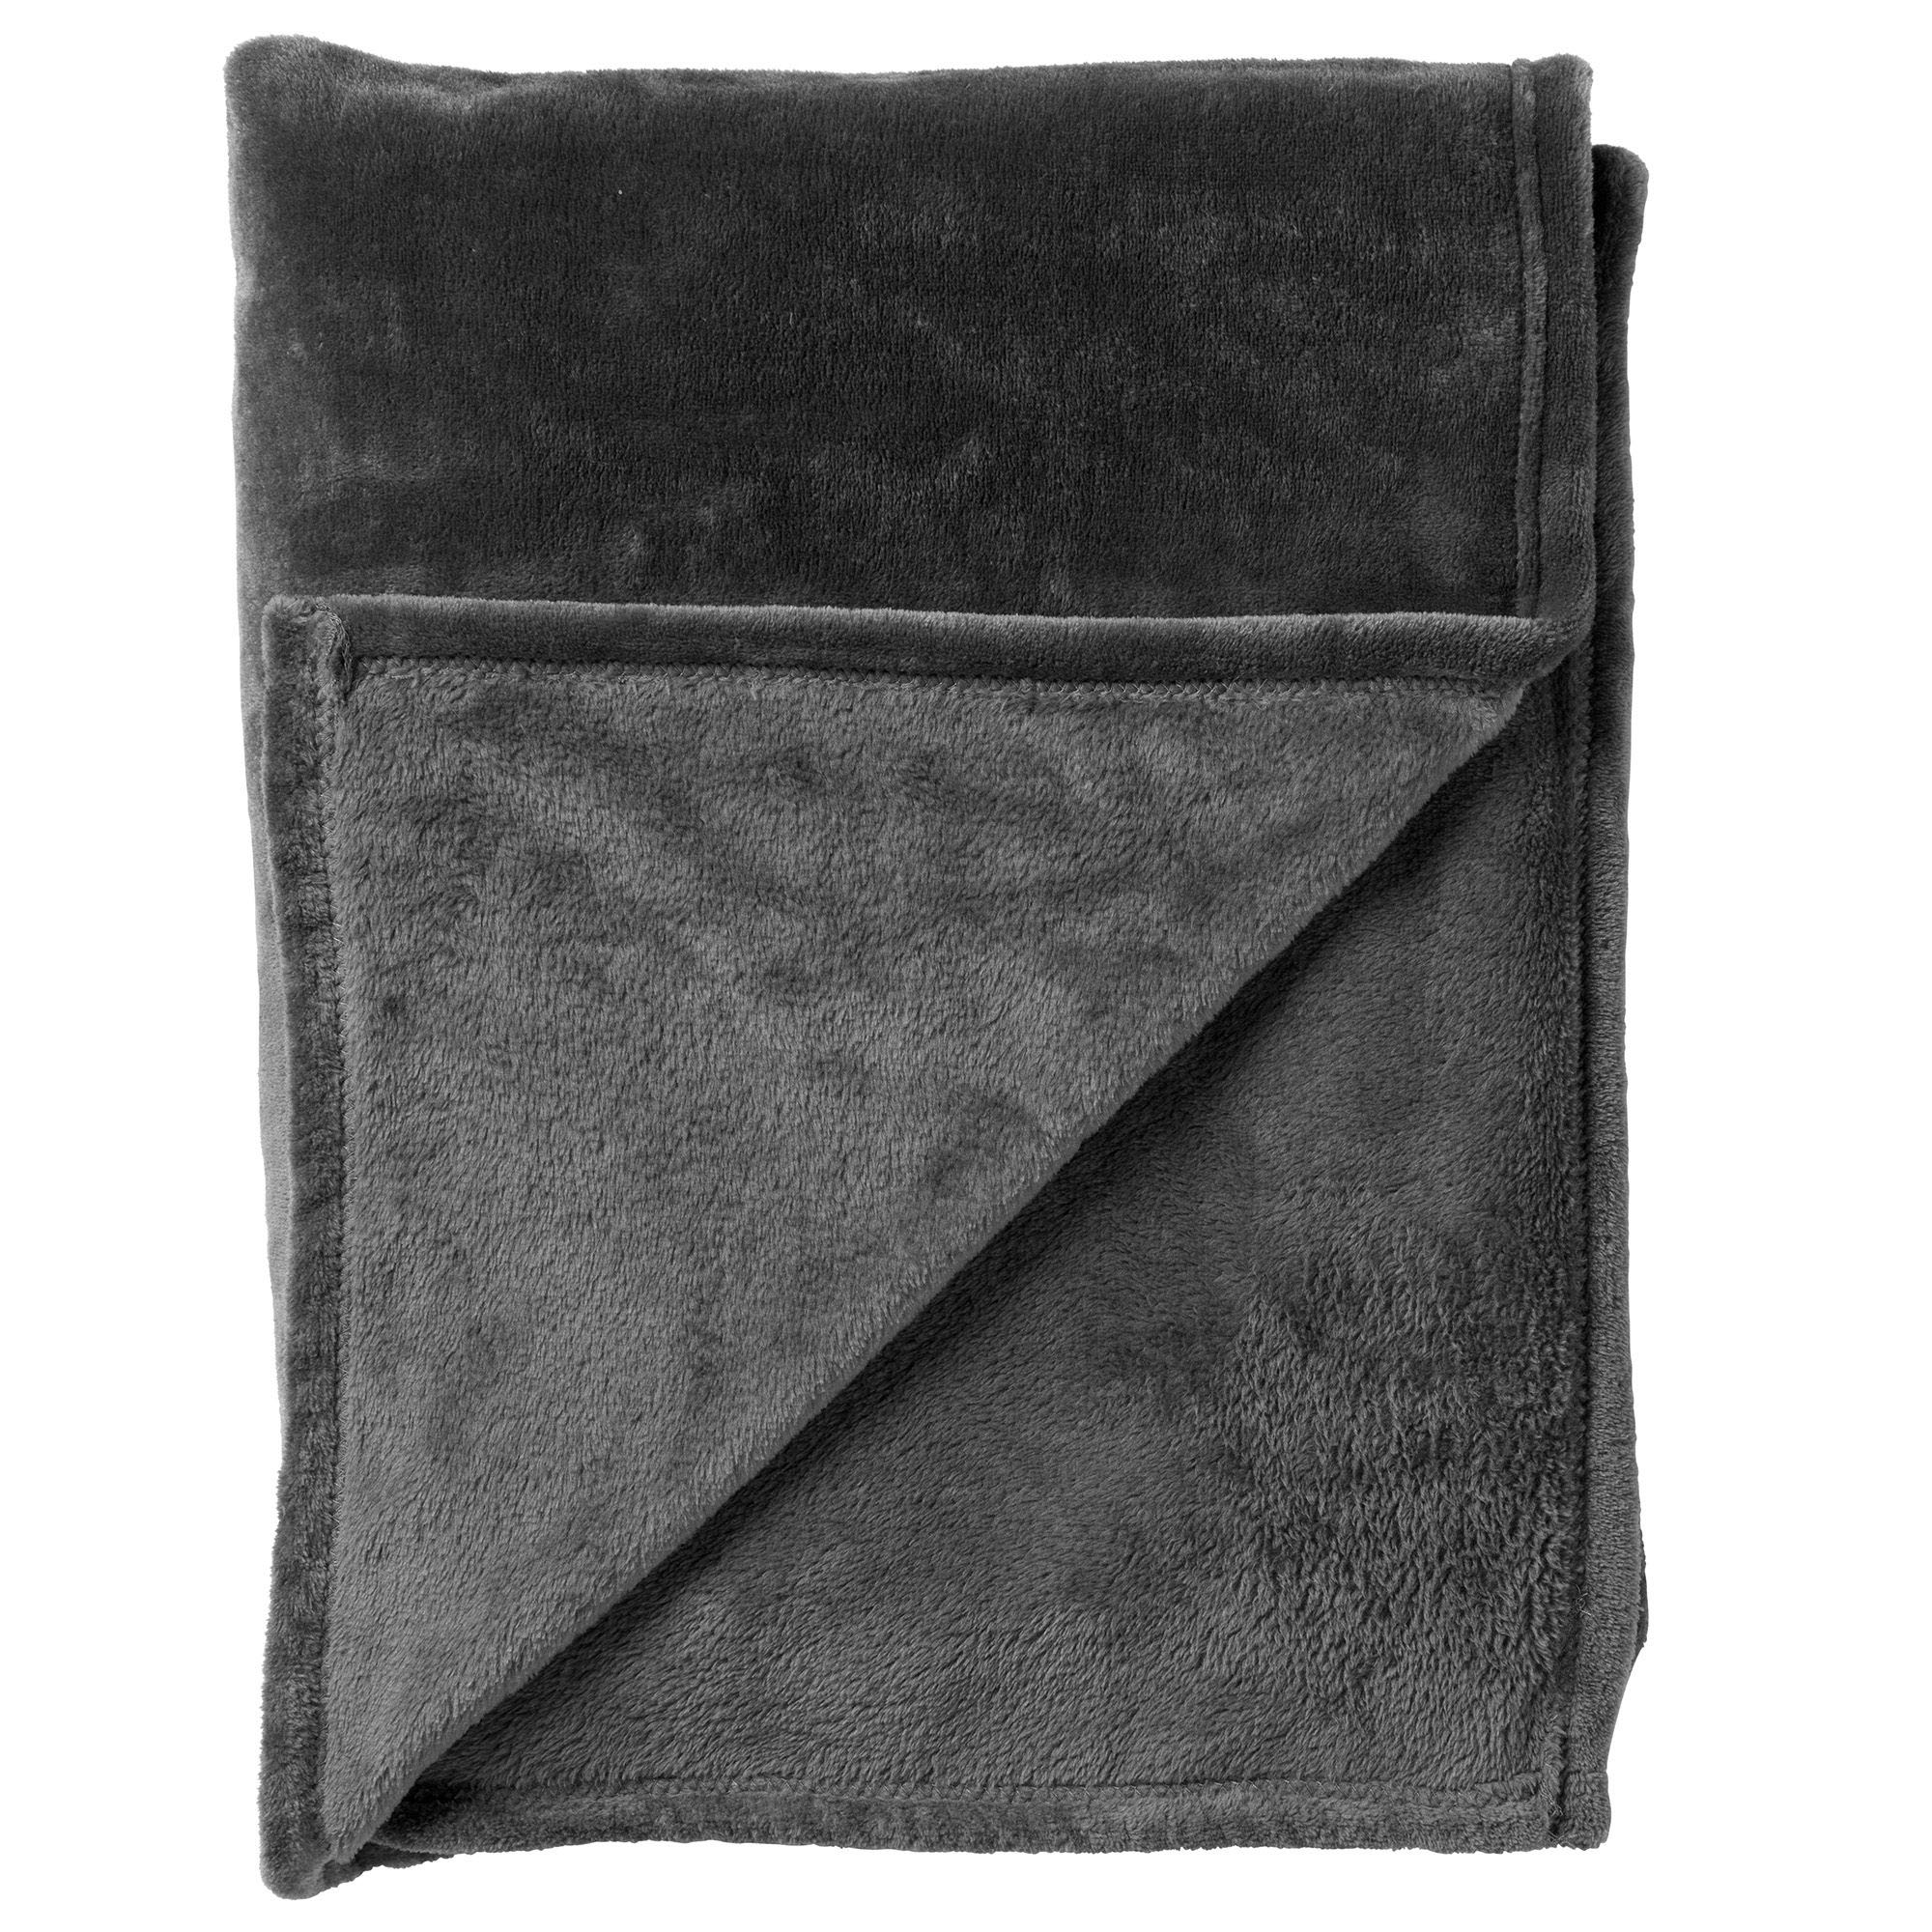 MARLEY - Plaid 150x200 cm - zachte fleece deken - extra dik - Charcoal Gray - antraciet